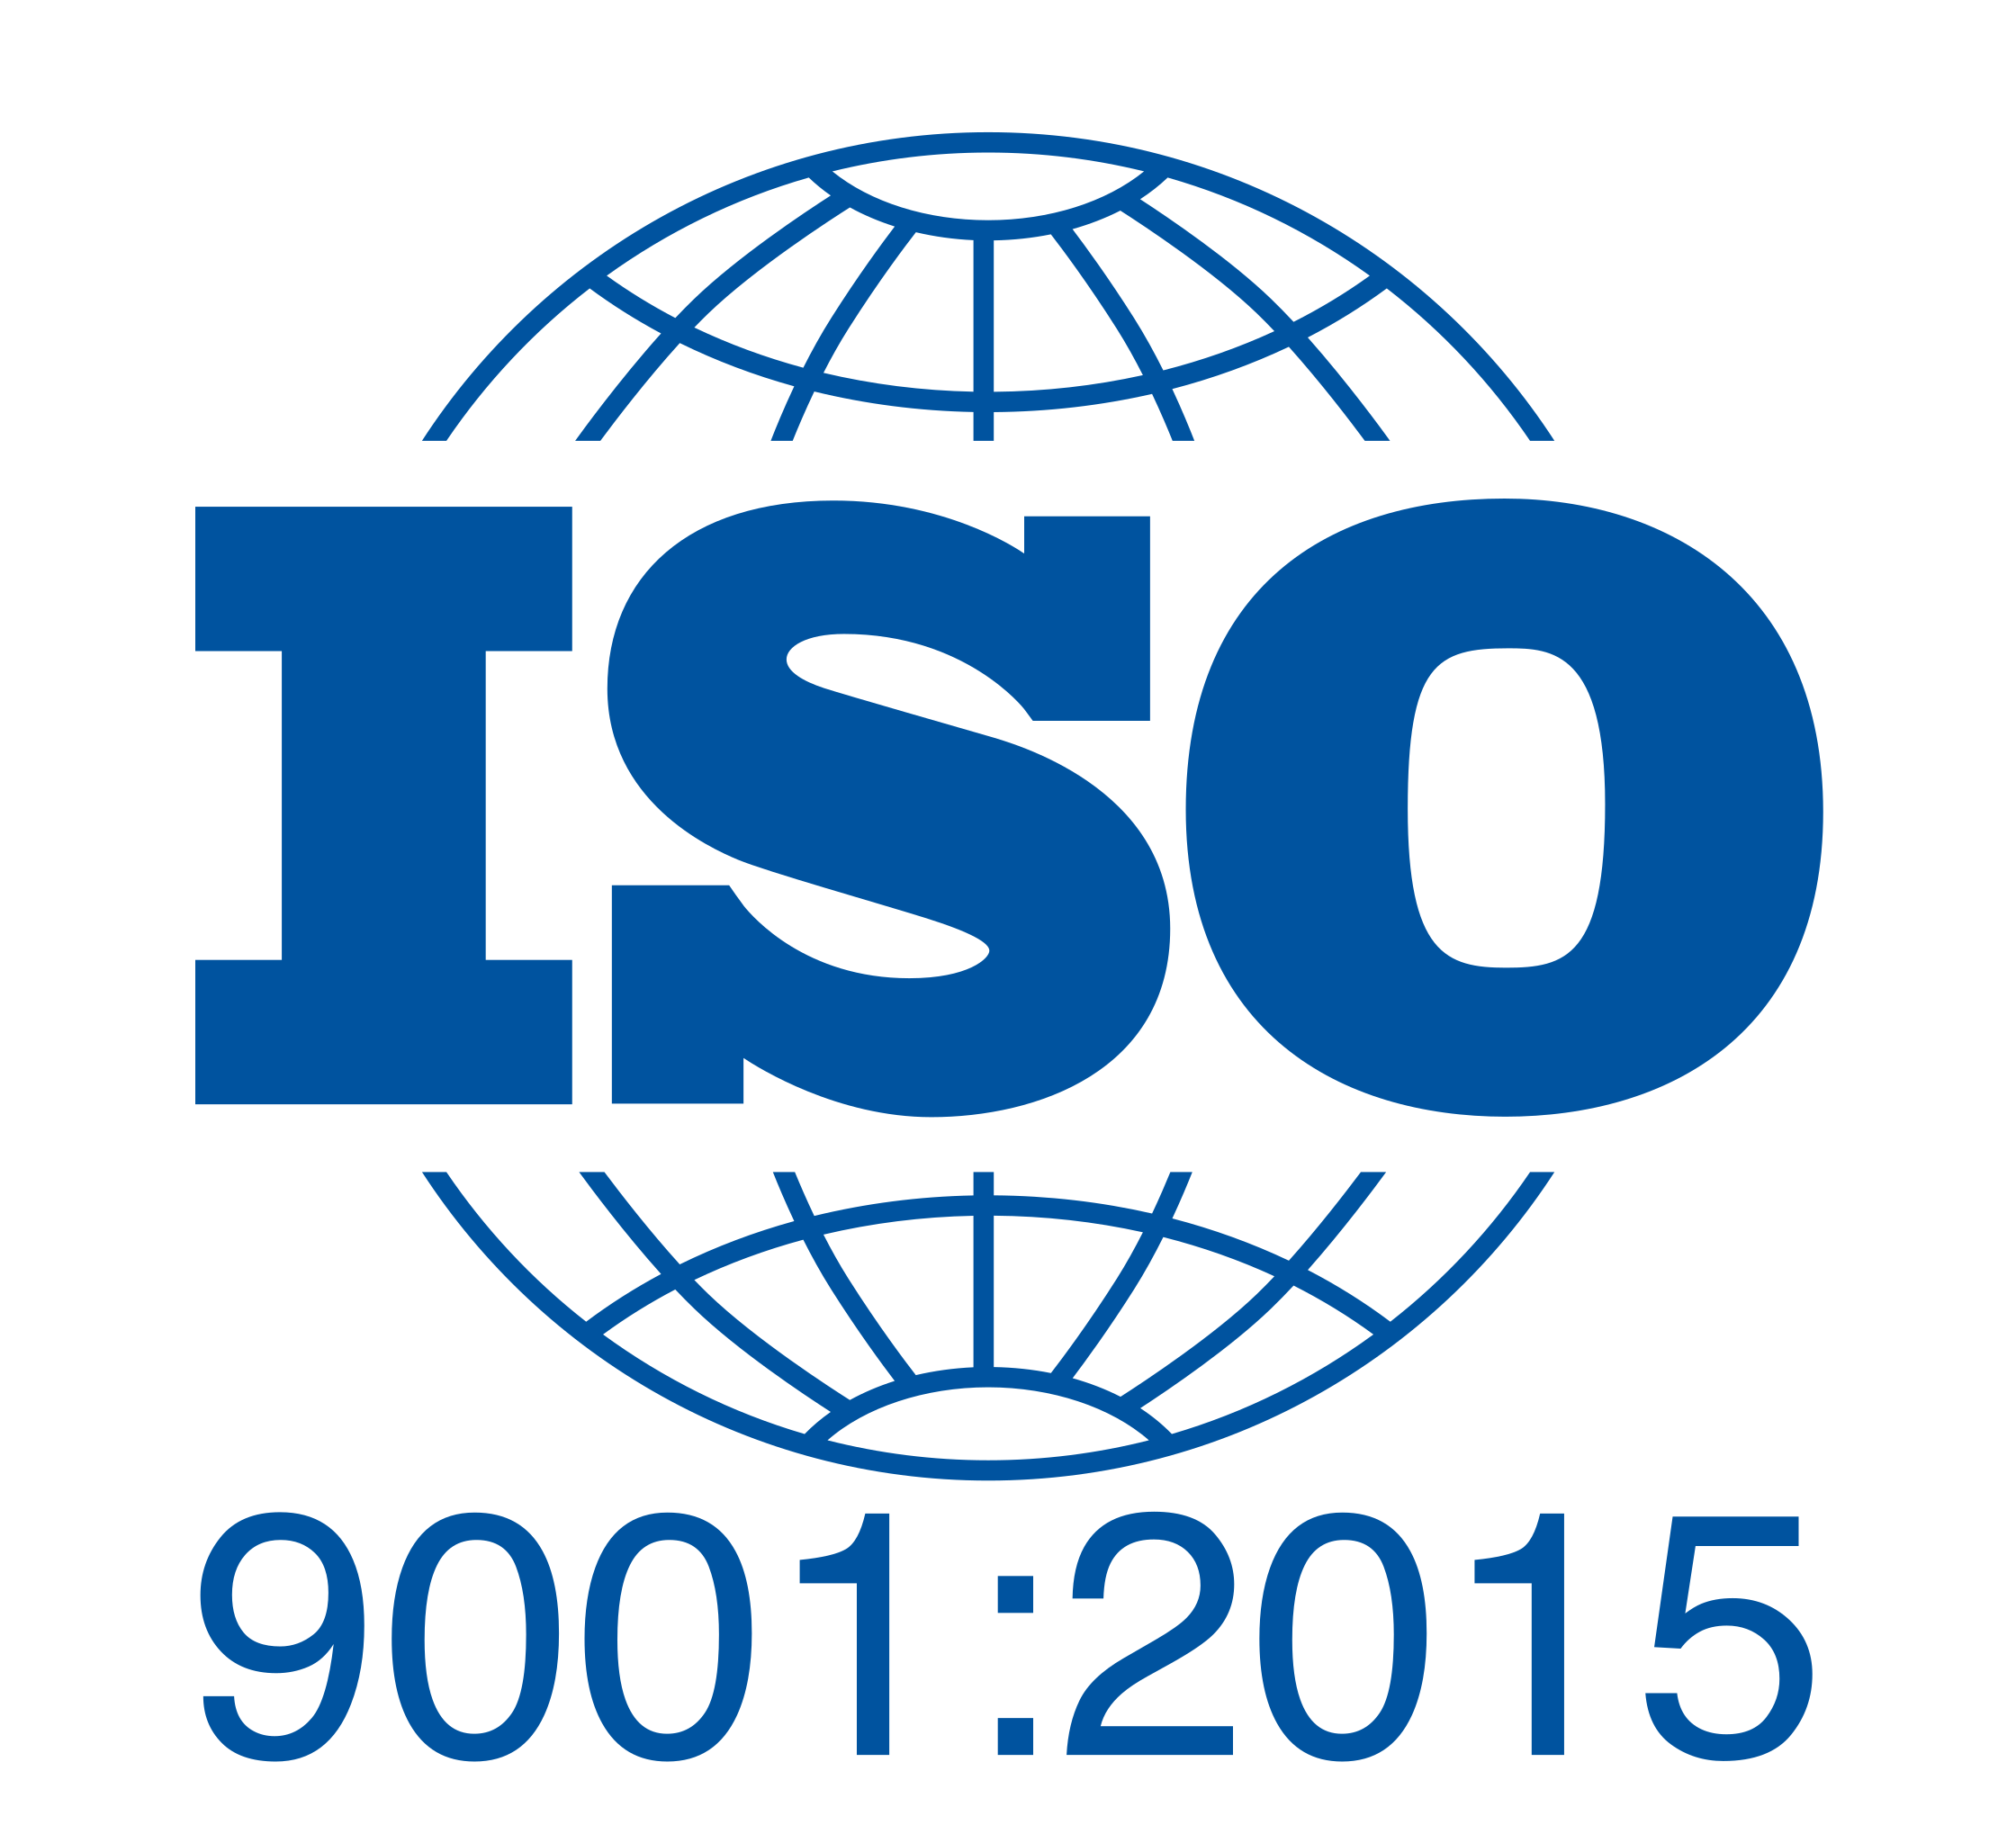 سايبرأكس تحوز على شهادة الآيزو ISO